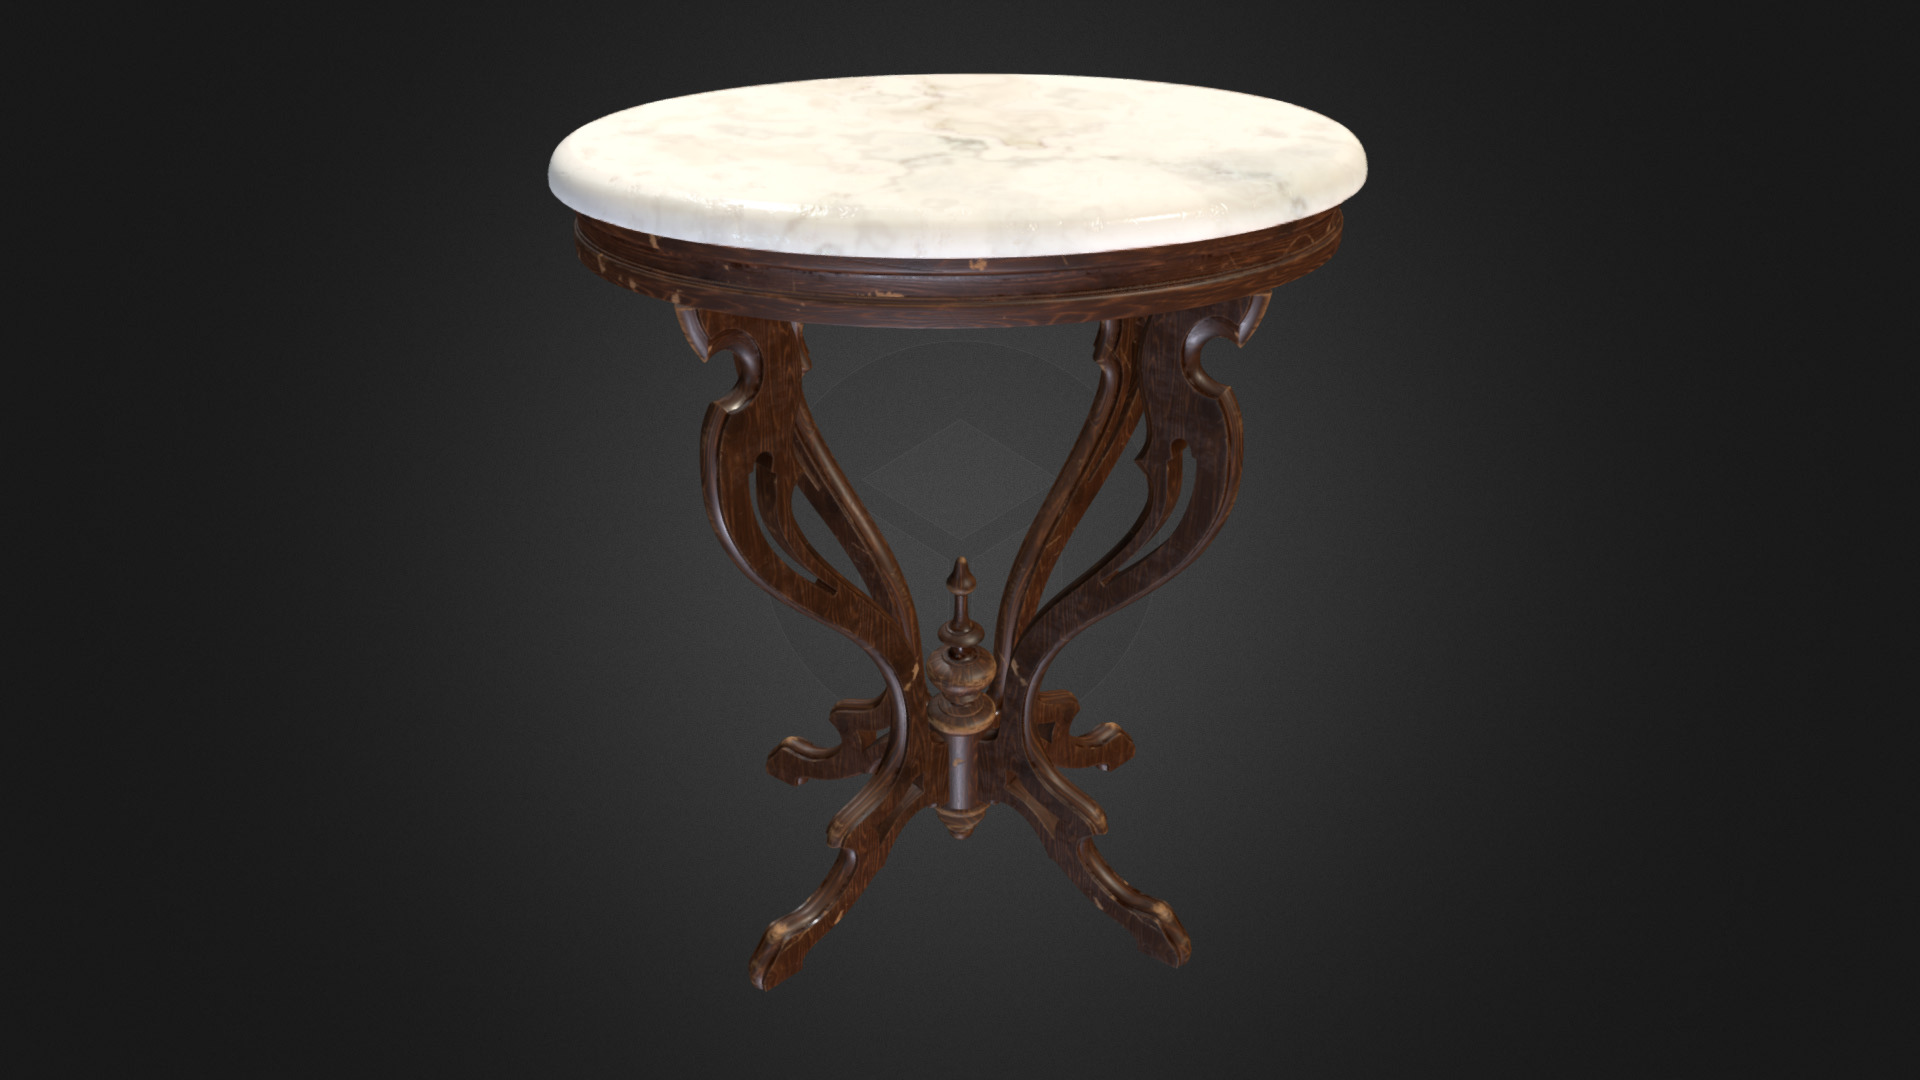 3D model Antique Pedestal Table 001 (High Poly) V1 - This is a 3D model of the Antique Pedestal Table 001 (High Poly) V1. The 3D model is about a gold and silver table.